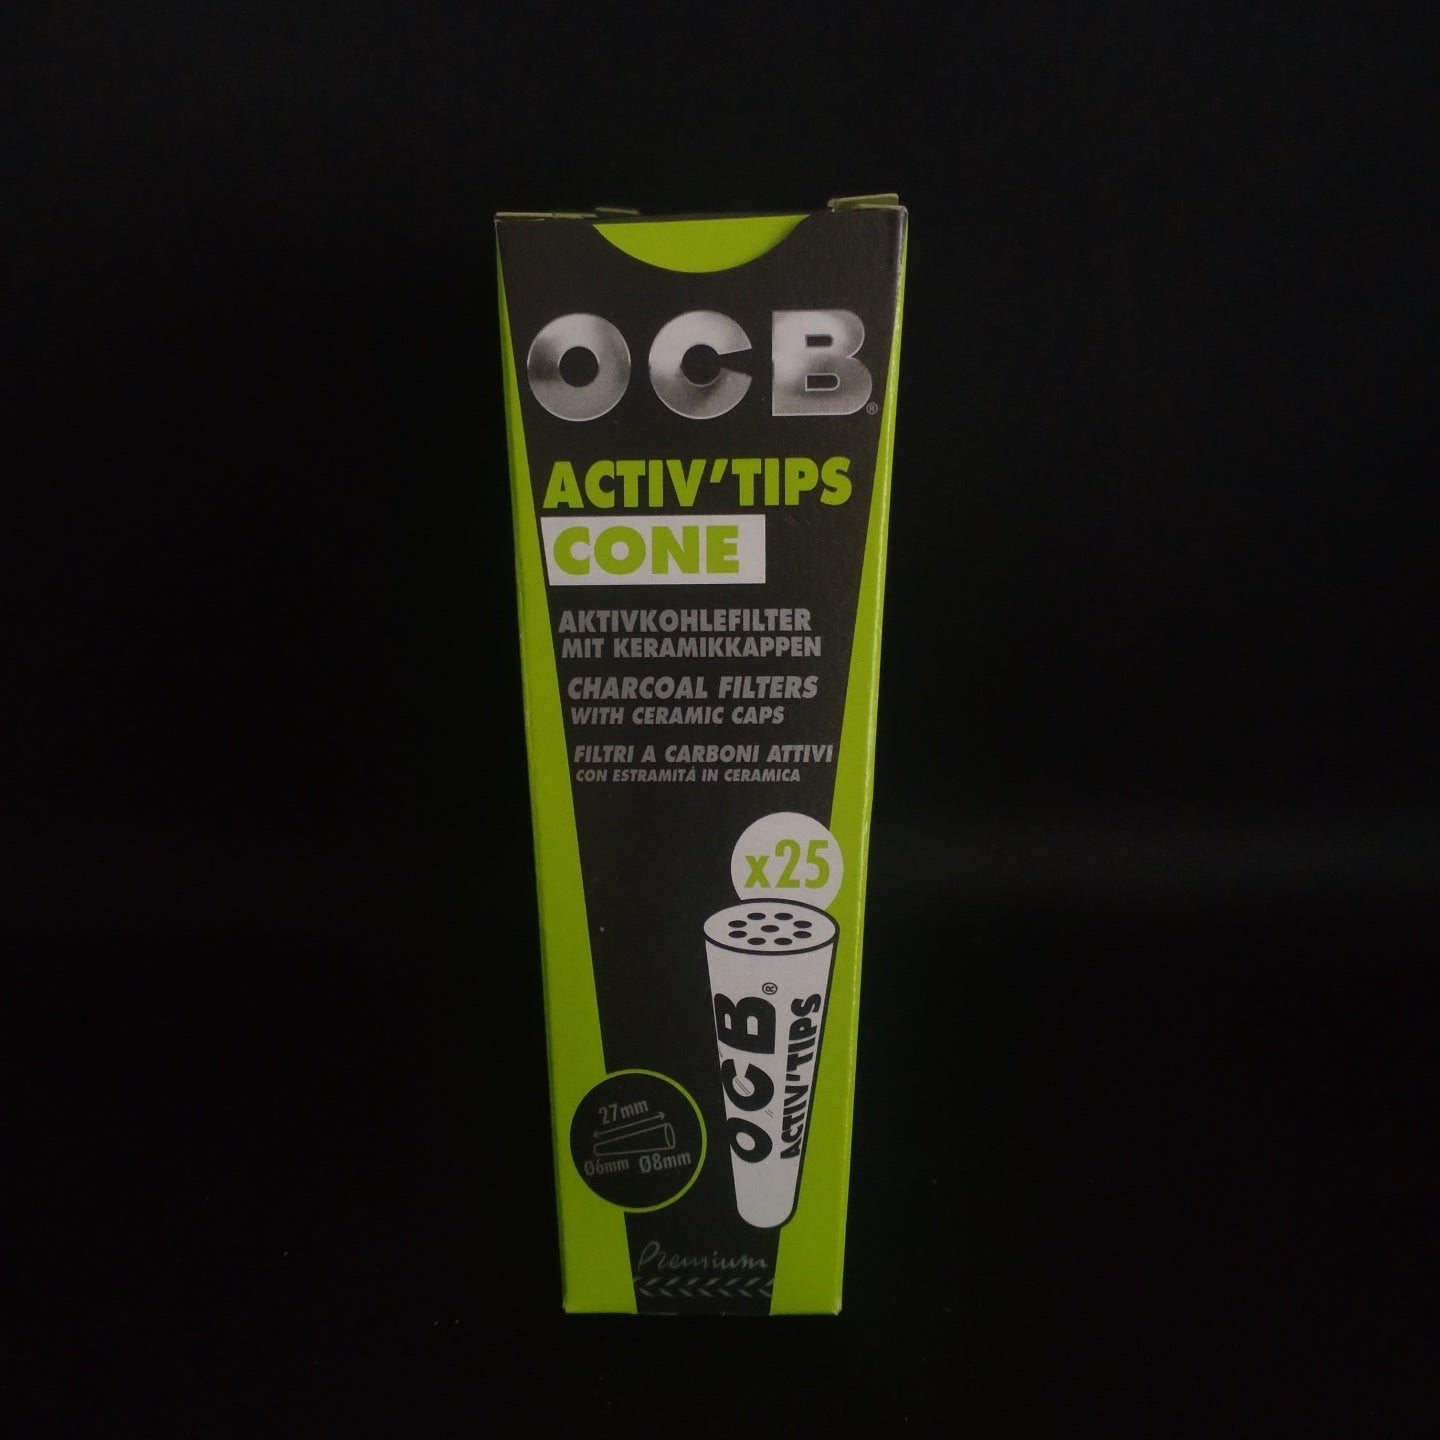 OCB Active Tips Cones